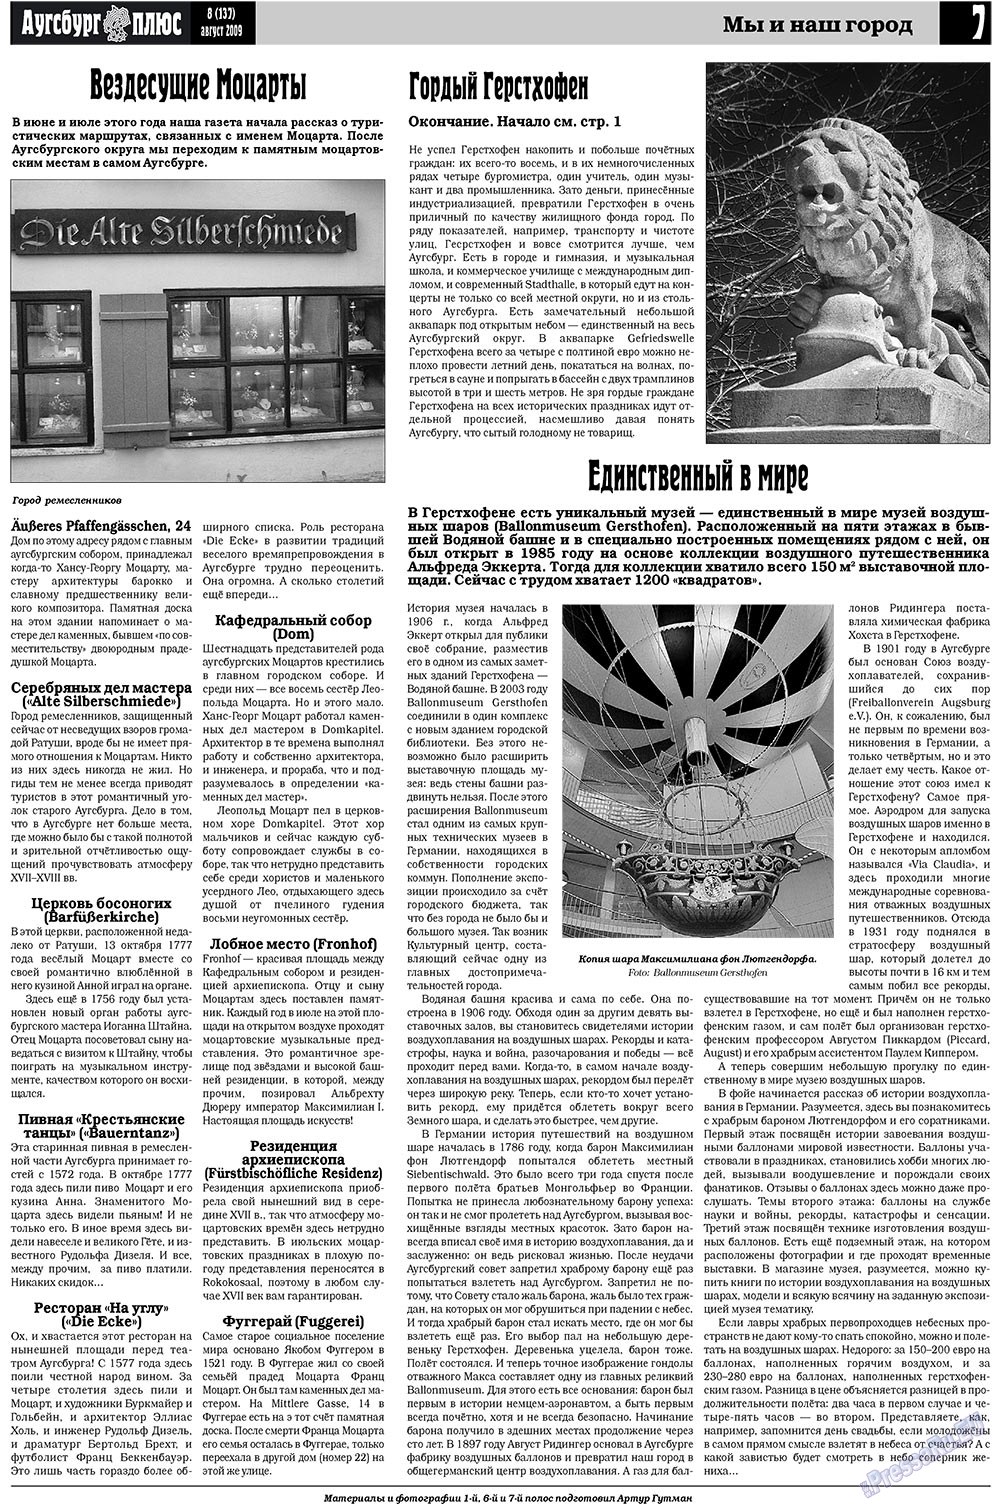 Германия плюс (газета). 2009 год, номер 8, стр. 9